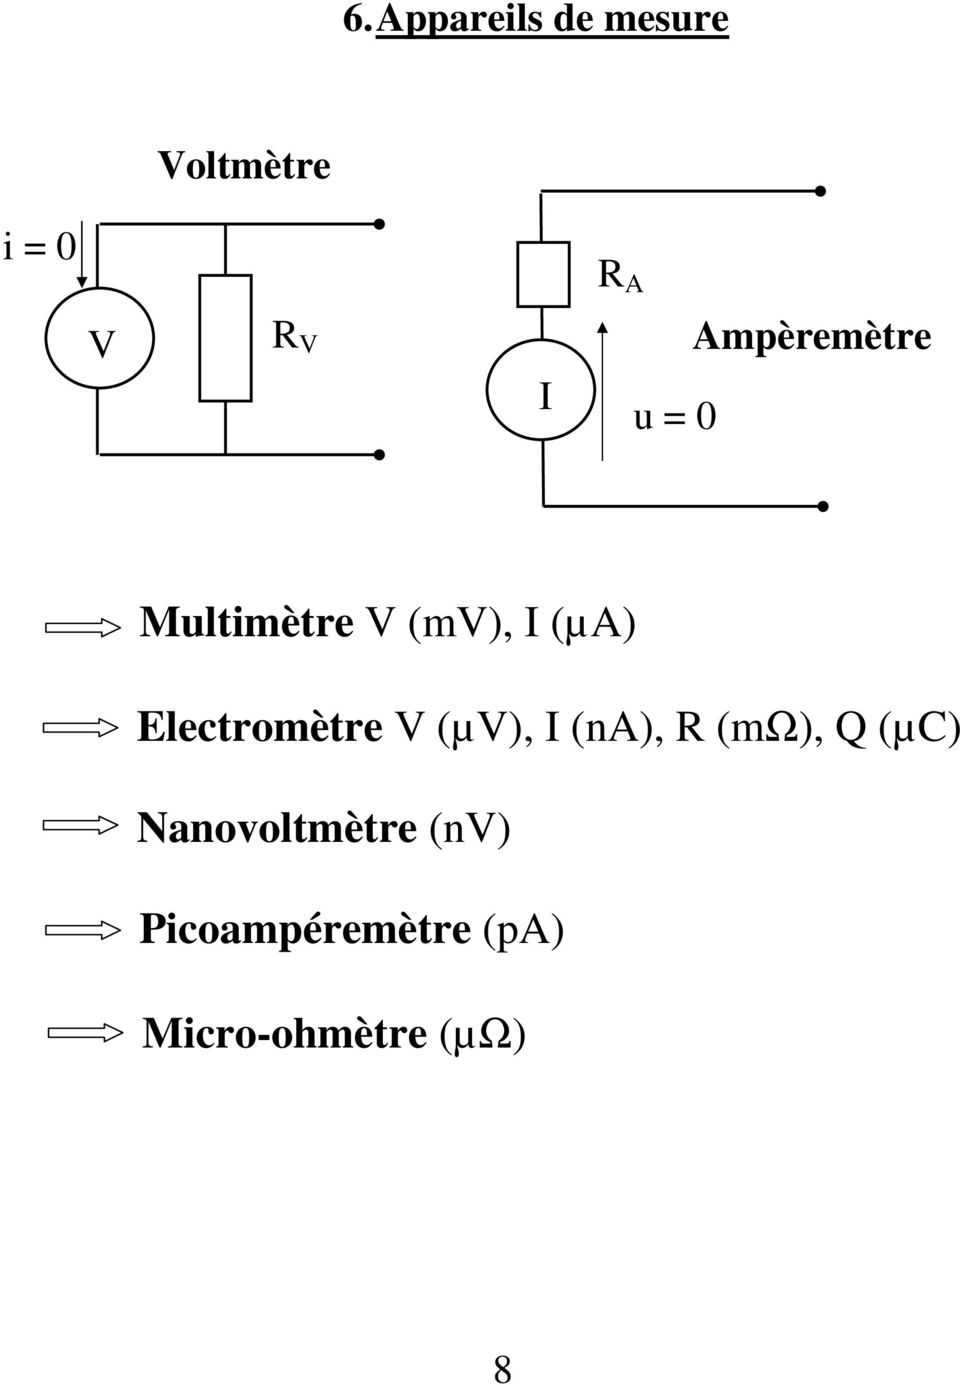 Electromètre (µ), (na), (mω), Q (µc)